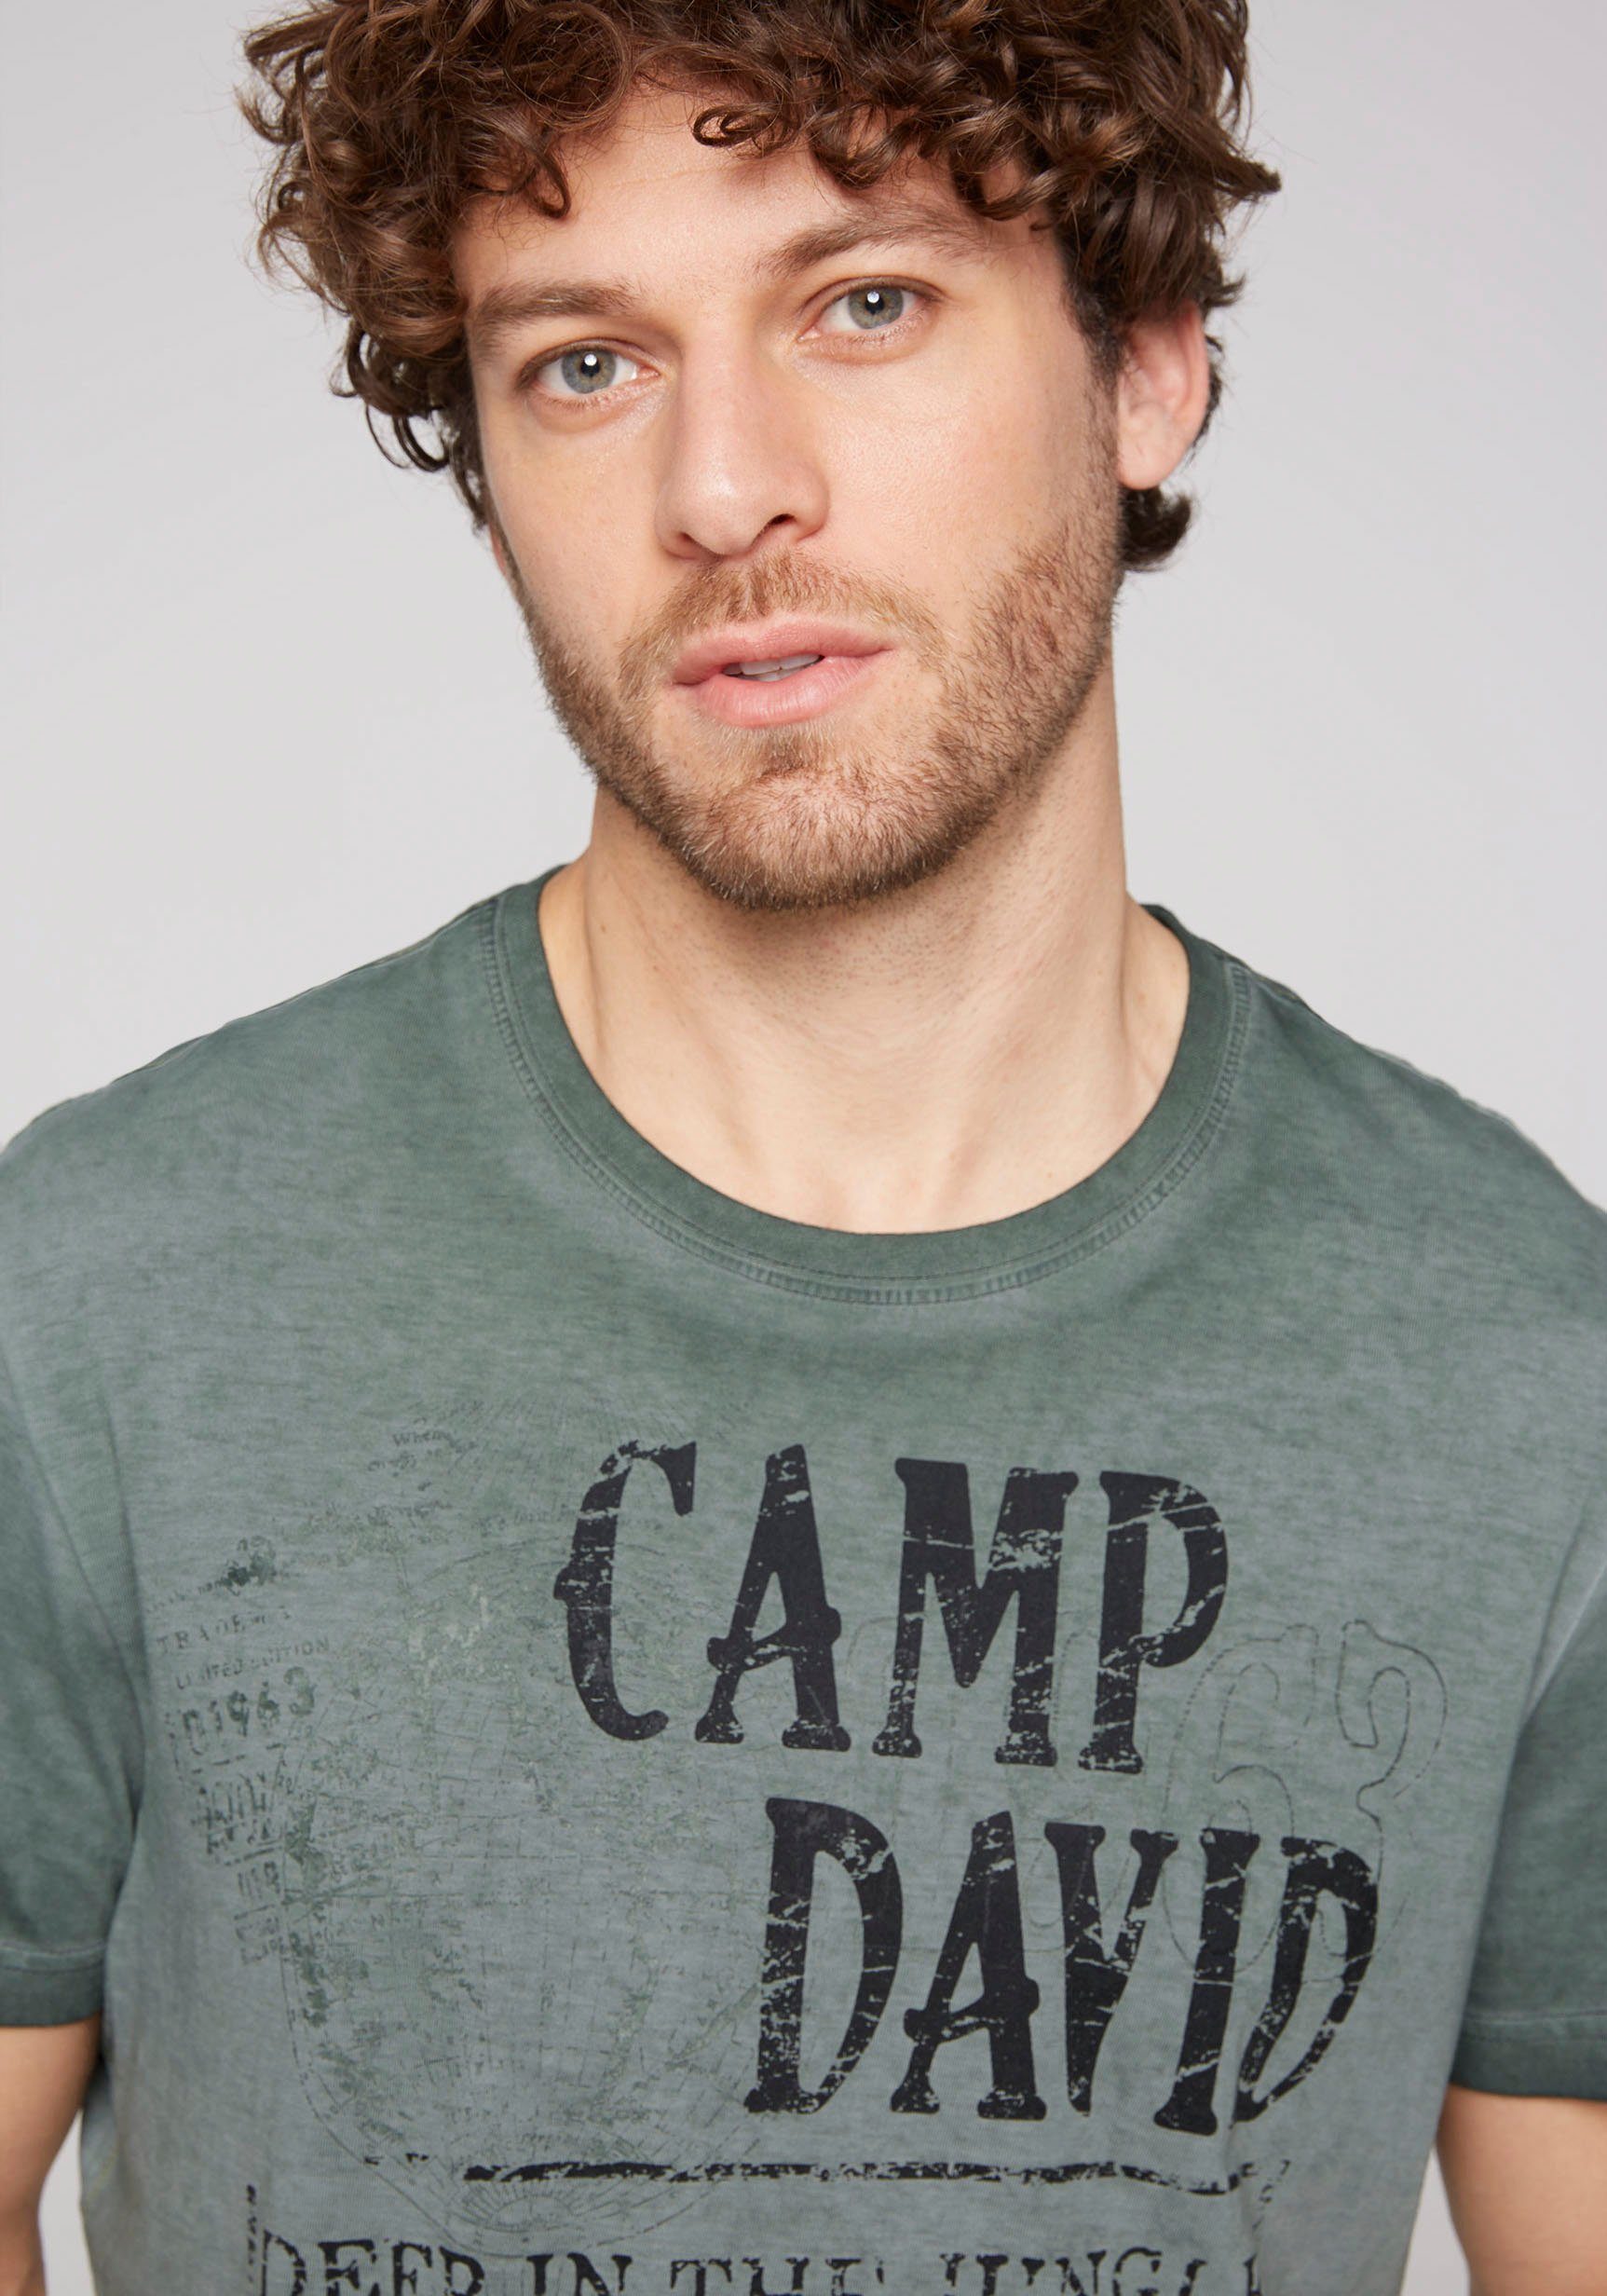 CAMP DAVID T-Shirt Seitenschlitzen shadow mit green